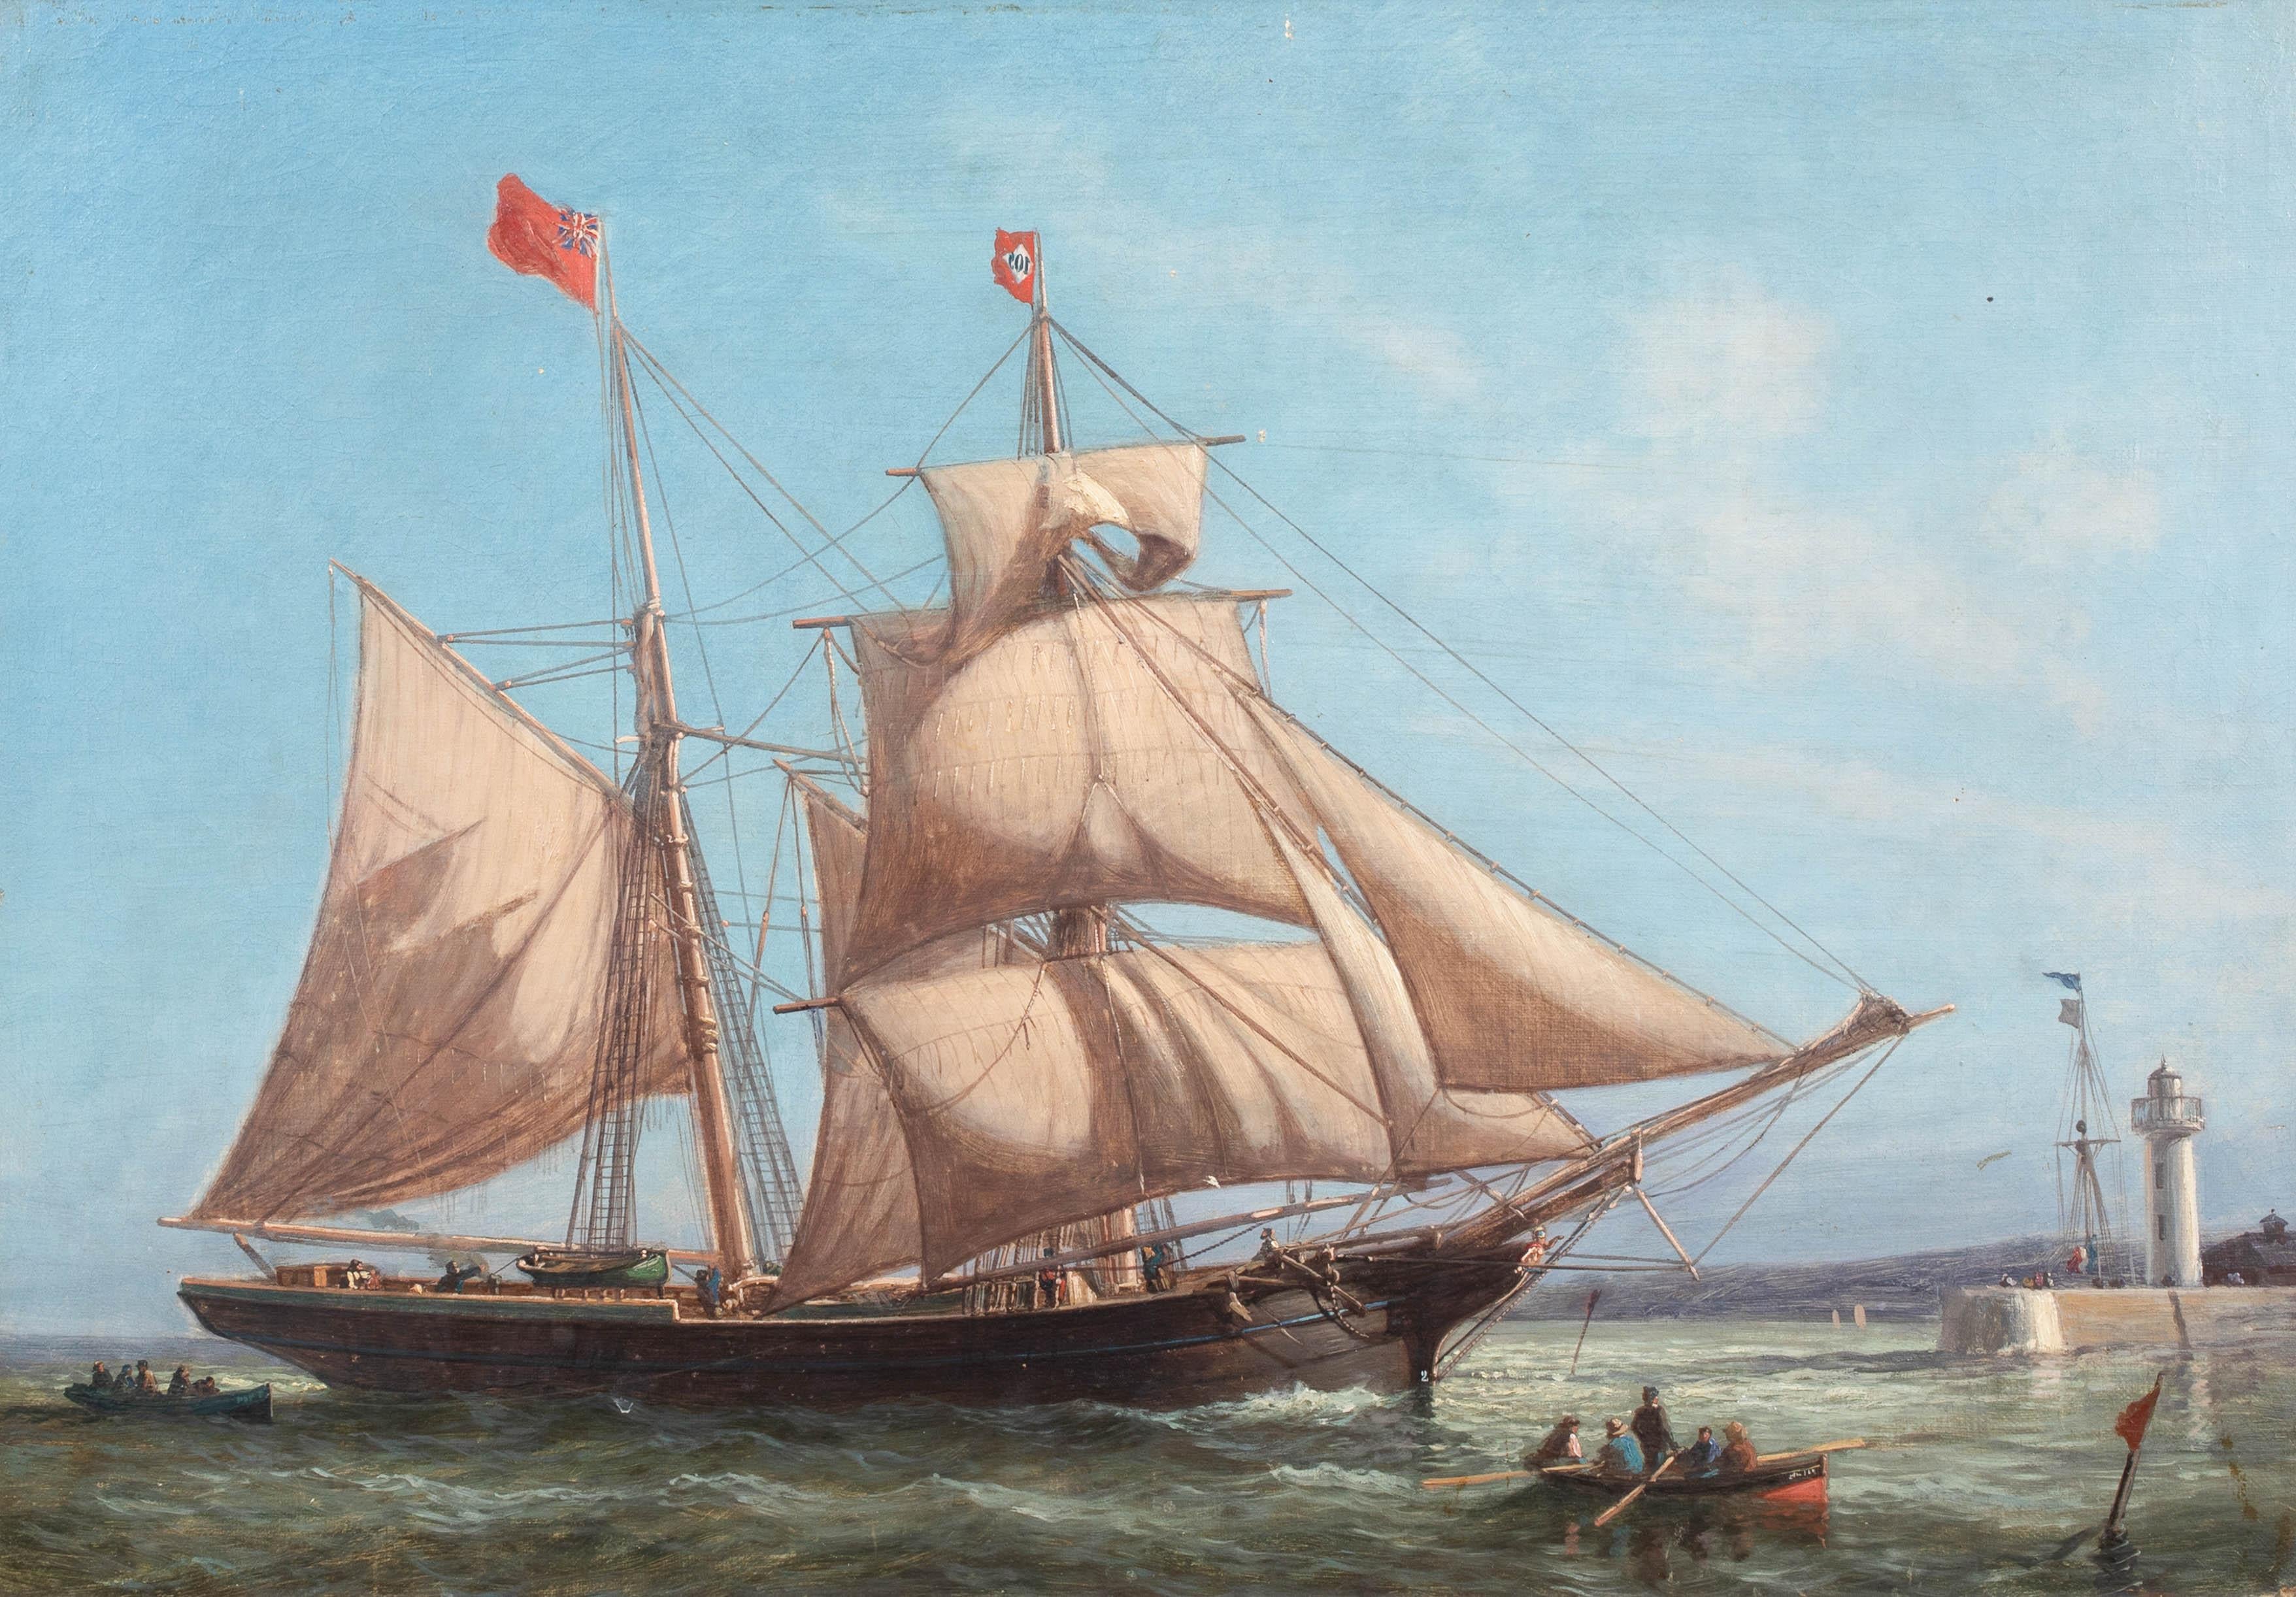 19th century schooner